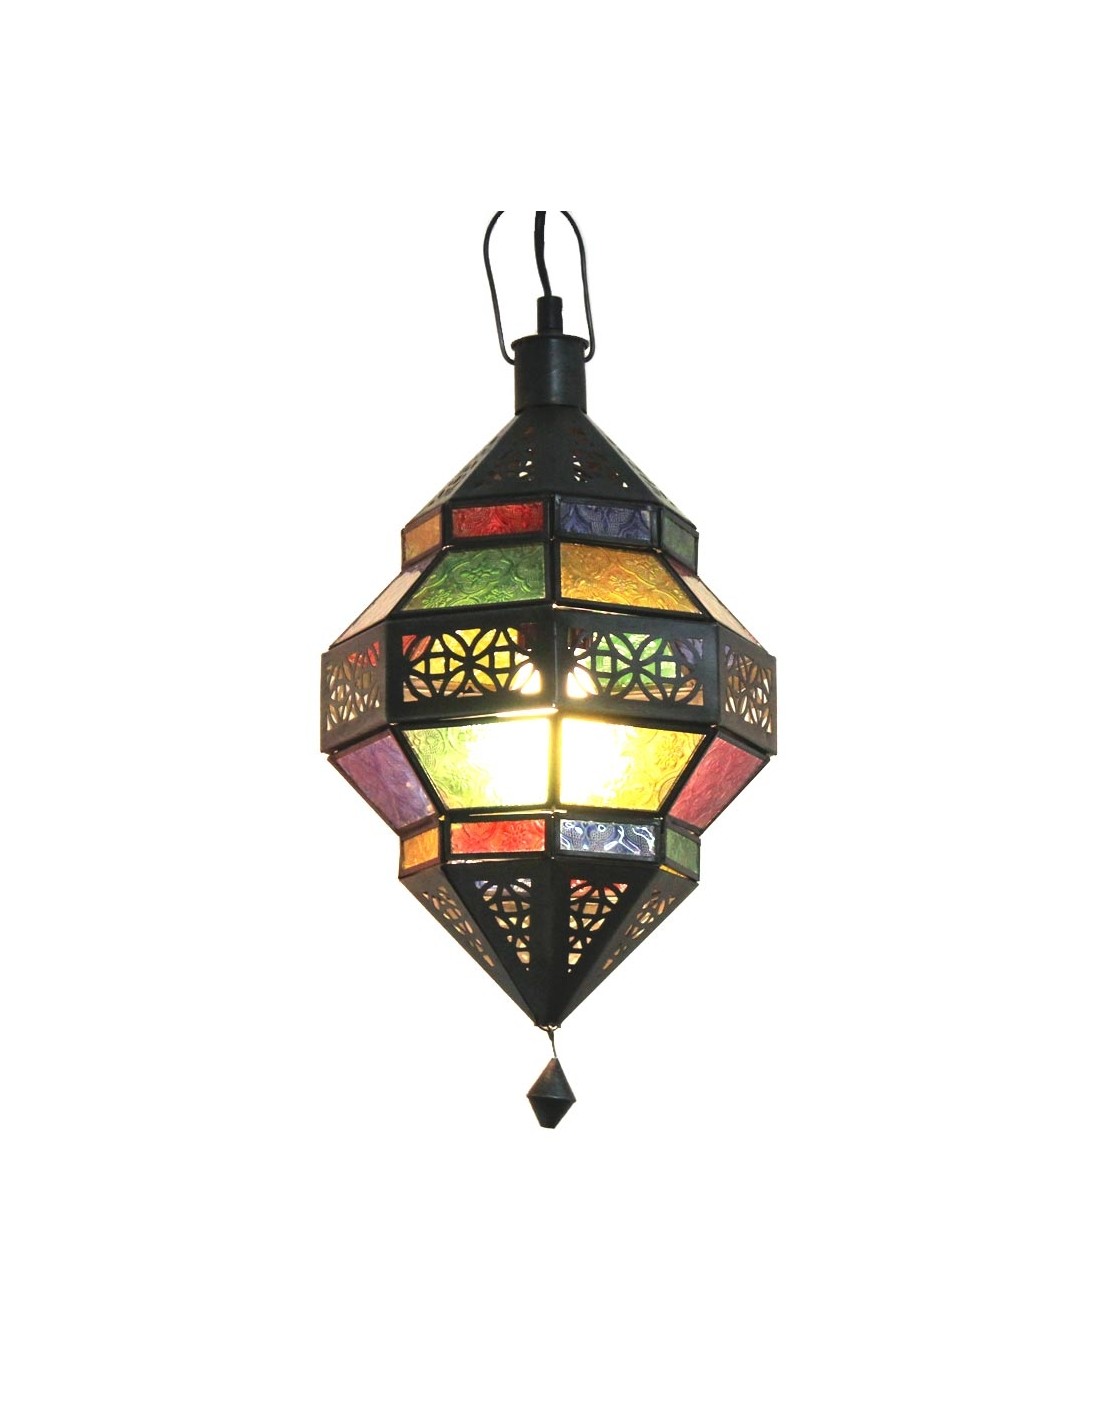 Orientalische Lampe Trob Bunt Im Albena Shop